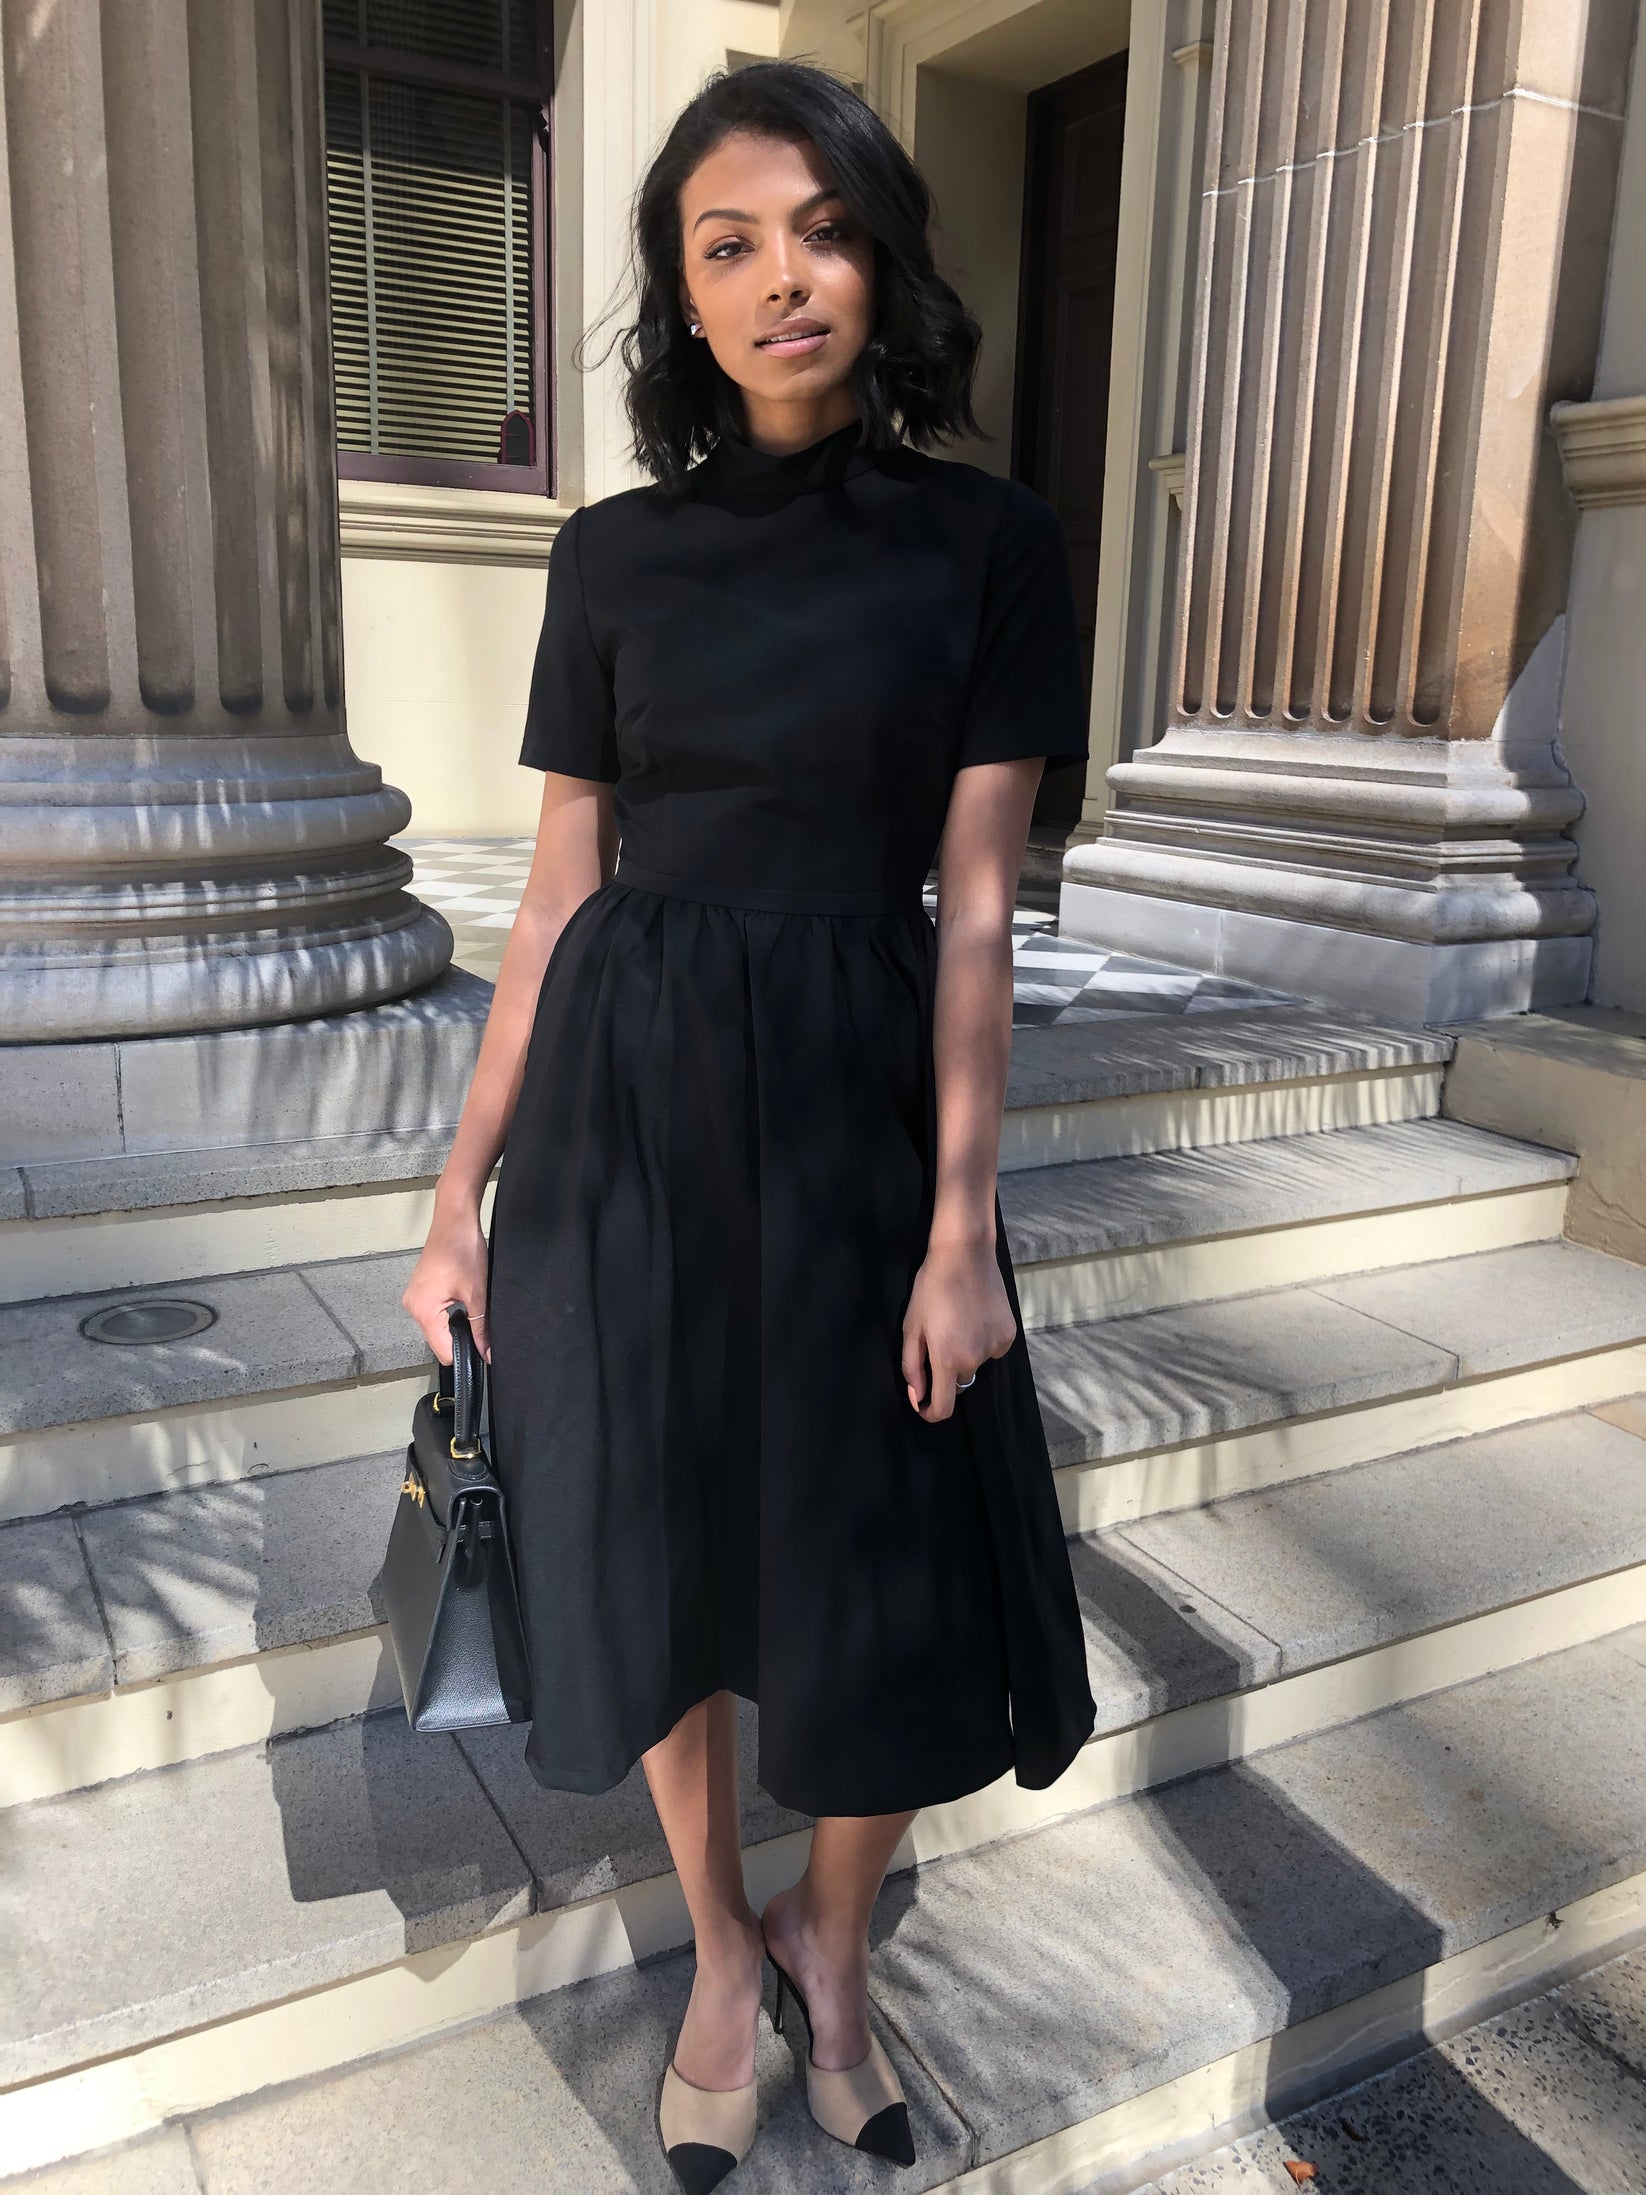 The Savannah Dress - Women's Fit and Flare Work Midi Black Dress – Miss ...